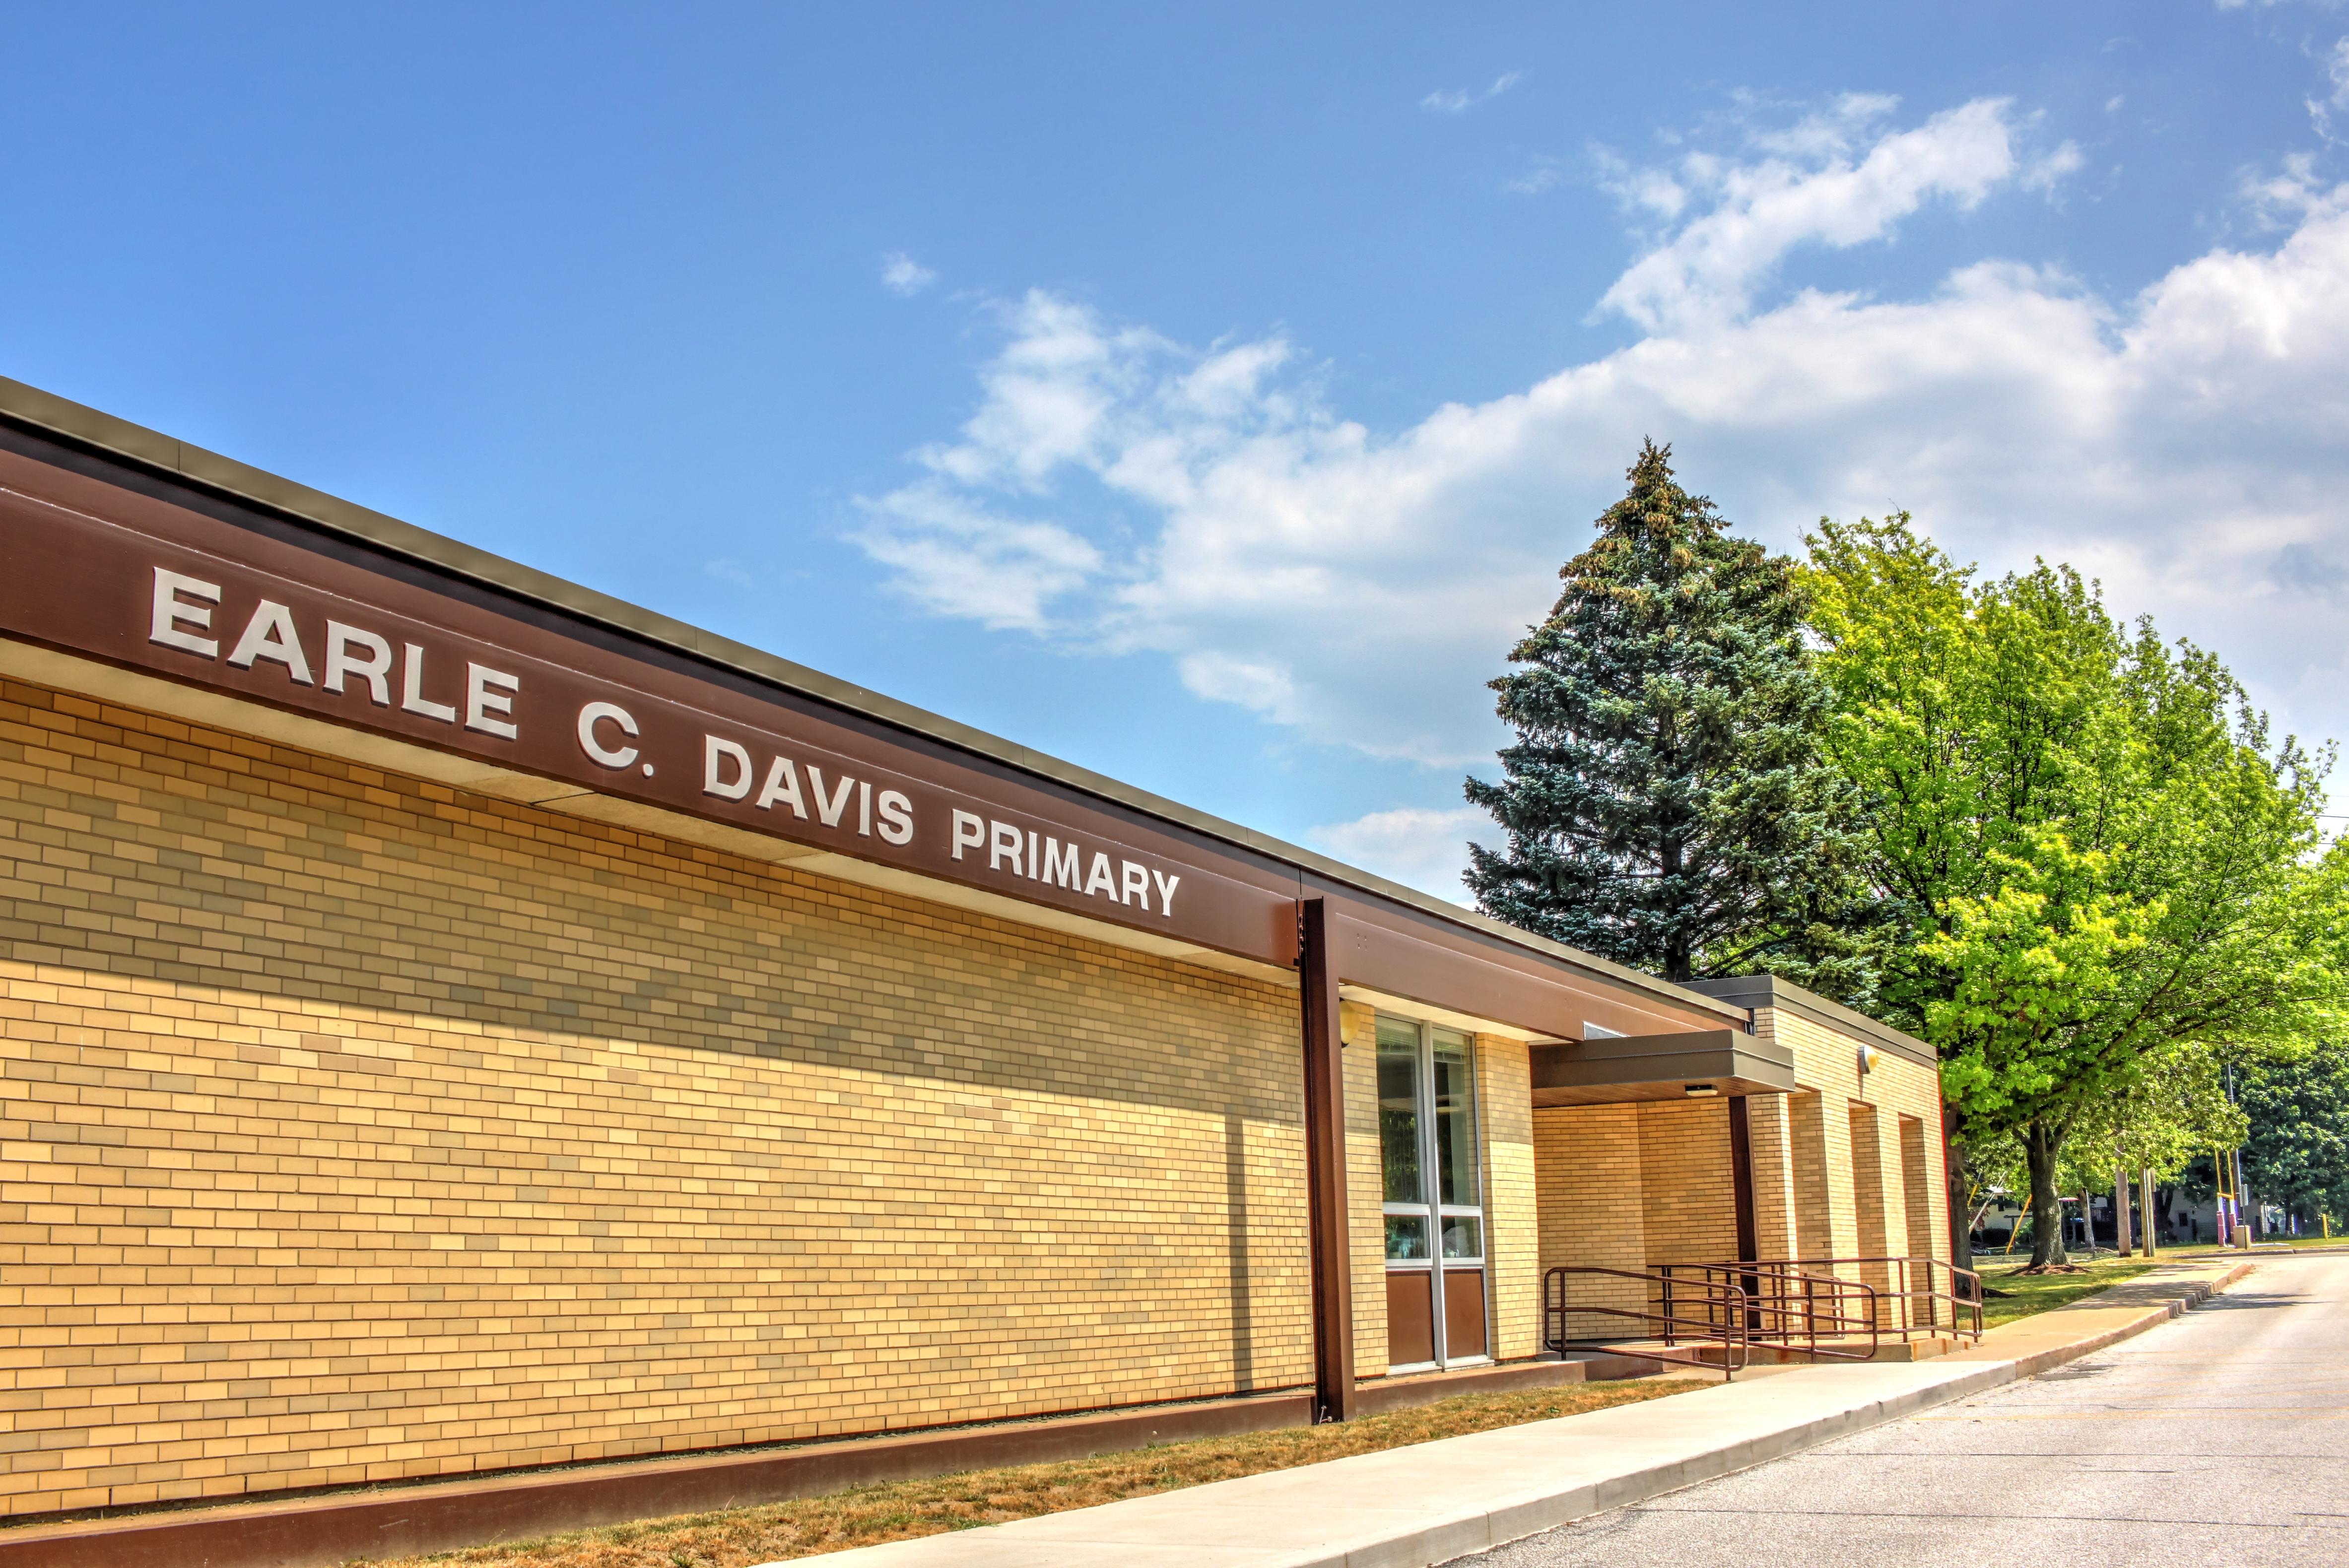 Outside view of the Earl C. Davis School